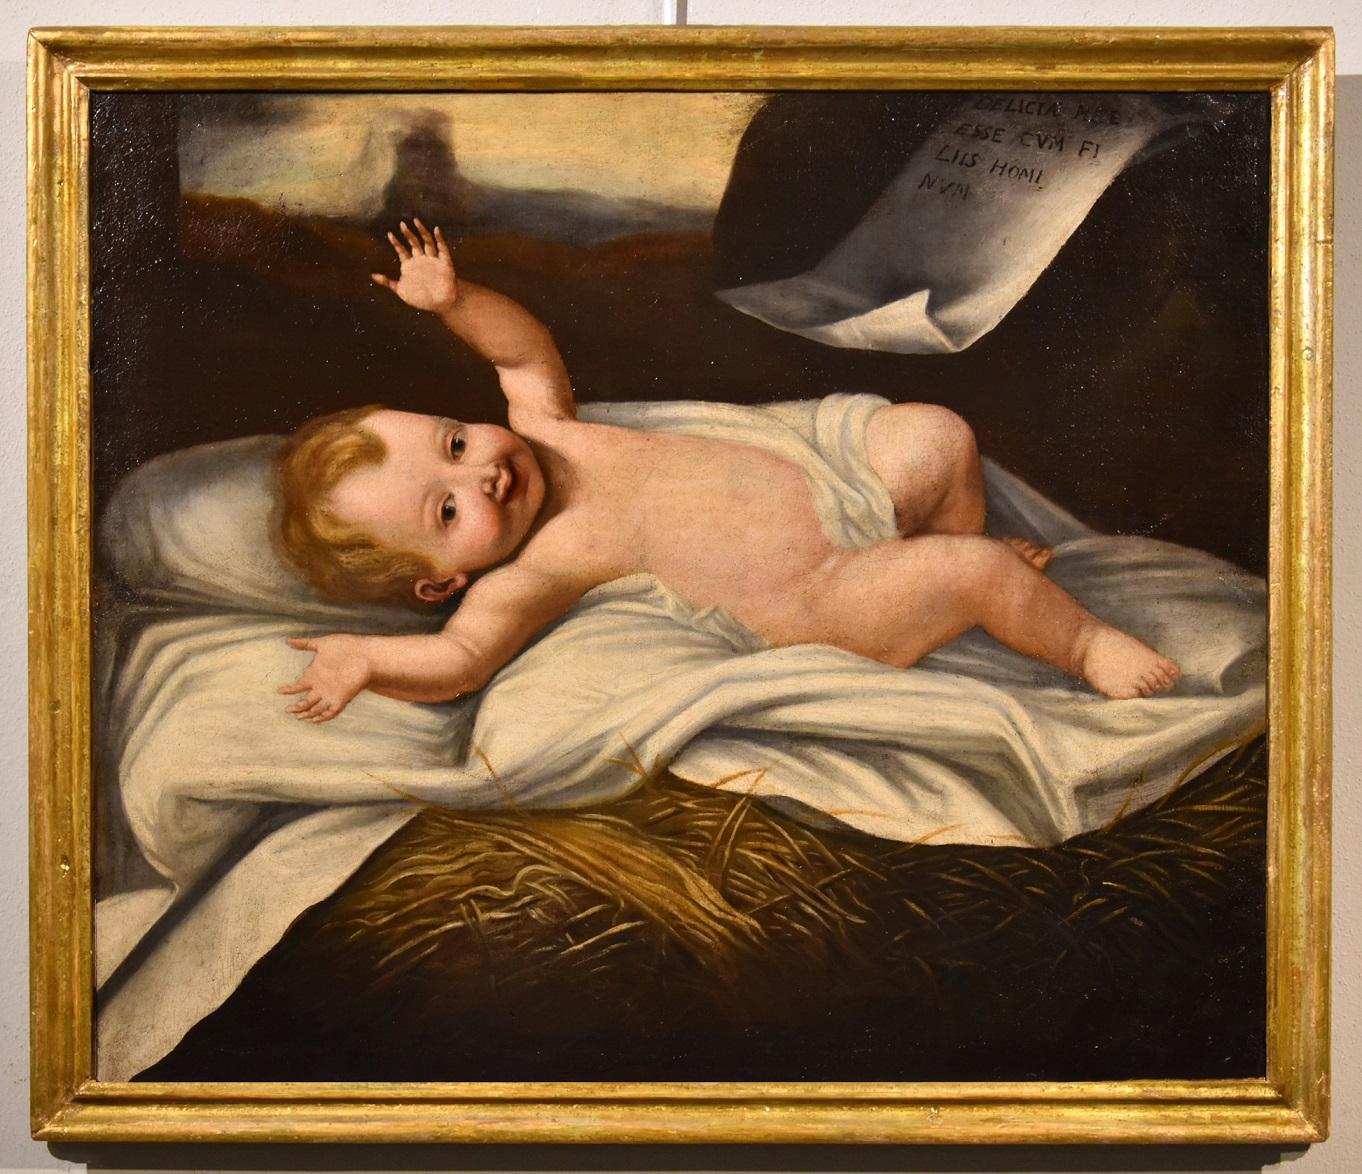 Lombard painter active in the 17th century Portrait Painting – Babykind Jesus, Öl auf Leinwand, alter Meister, 17. Jahrhundert, Italien, religiös, Kind Jesus 